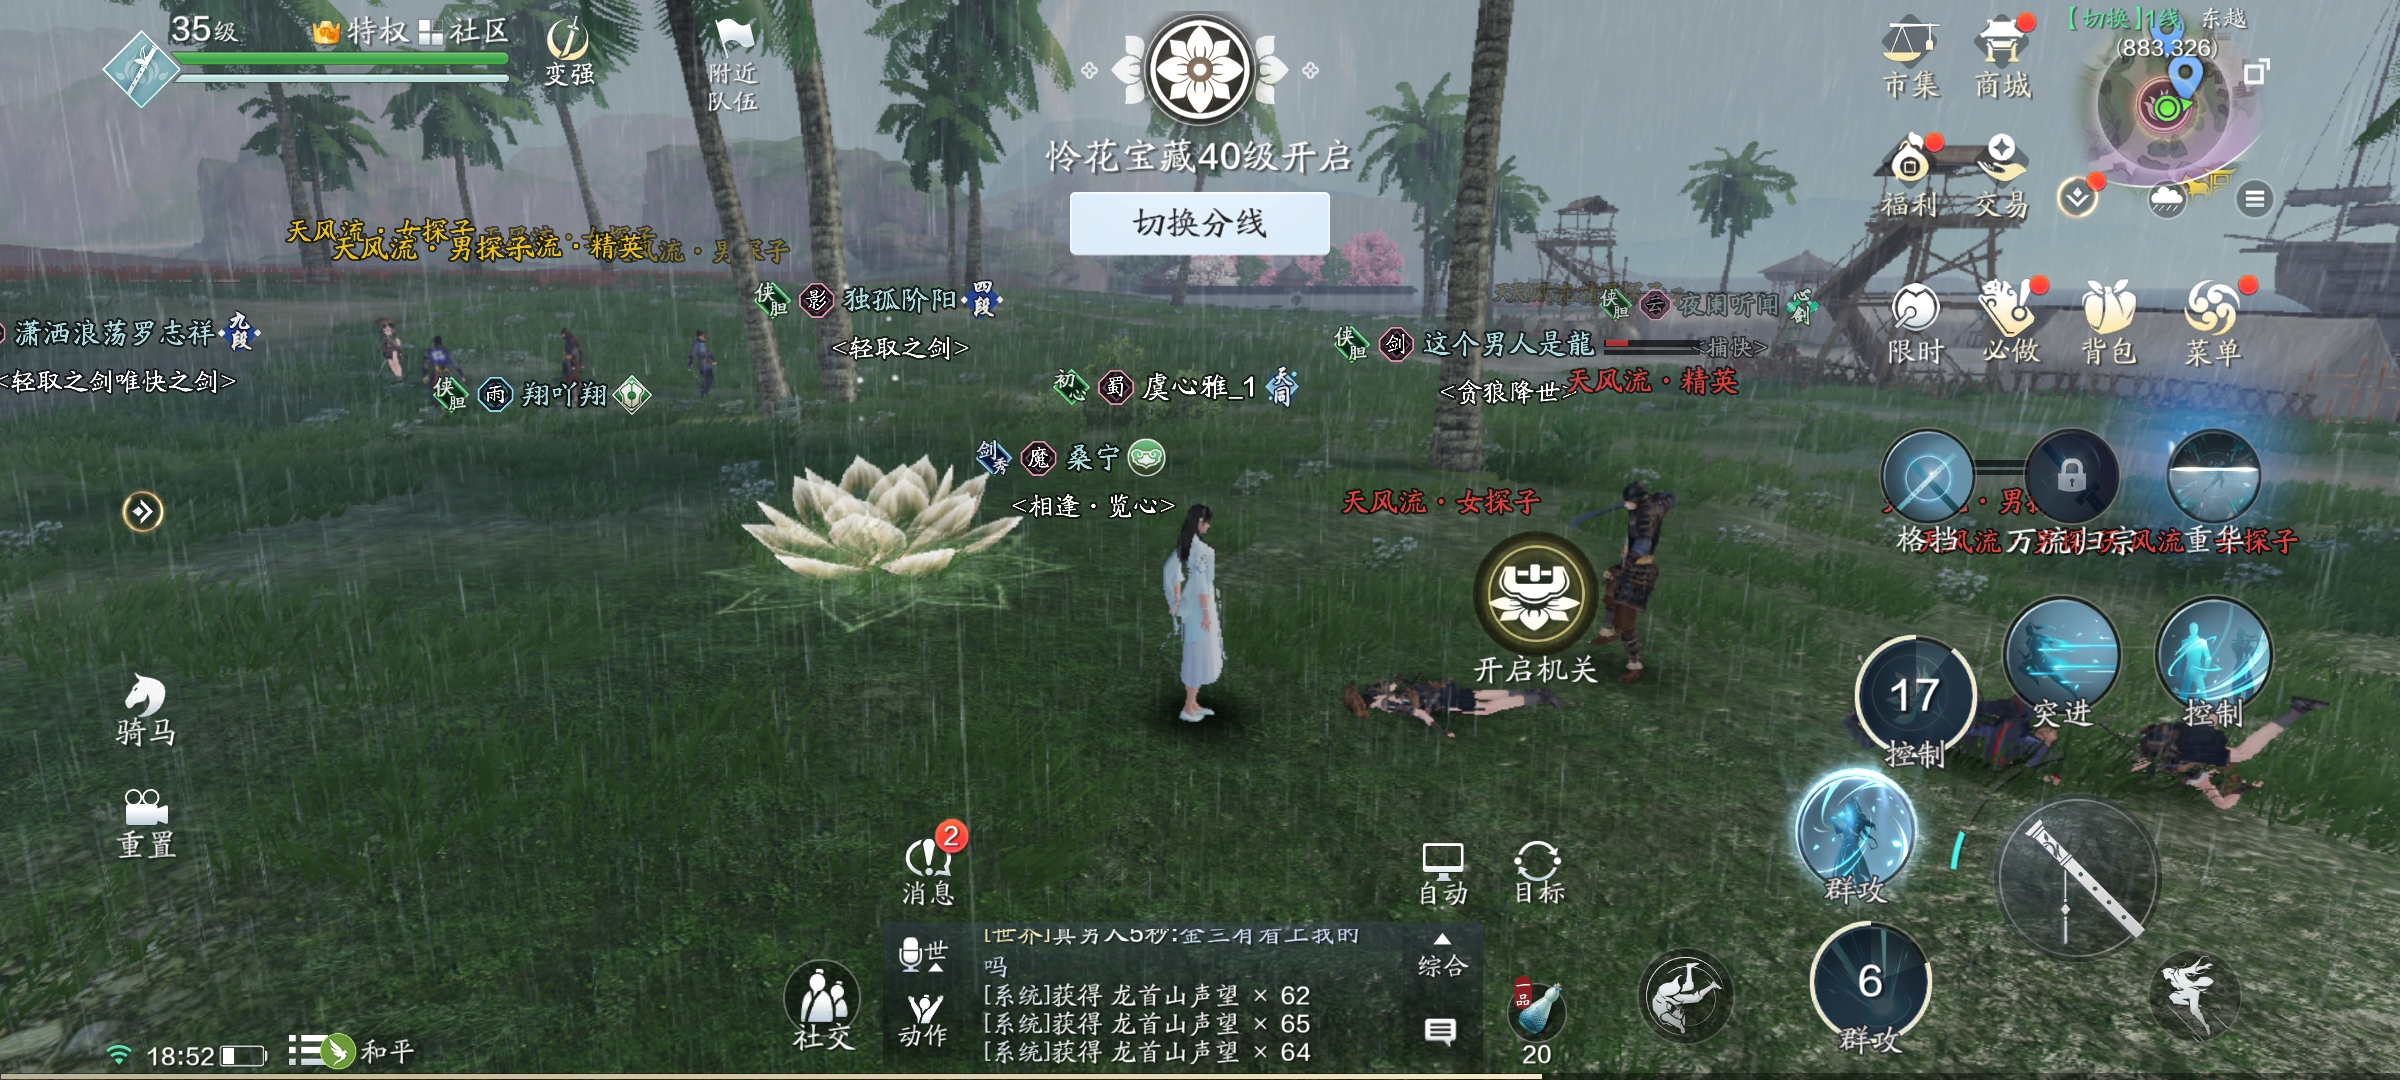 Người chơi sẽ phải tập trung làm nhiệm vụ chính tuyến và phụ tuyến thường xuyên trong game Thiên Nhai Minh Nguyệt Đao Mobile